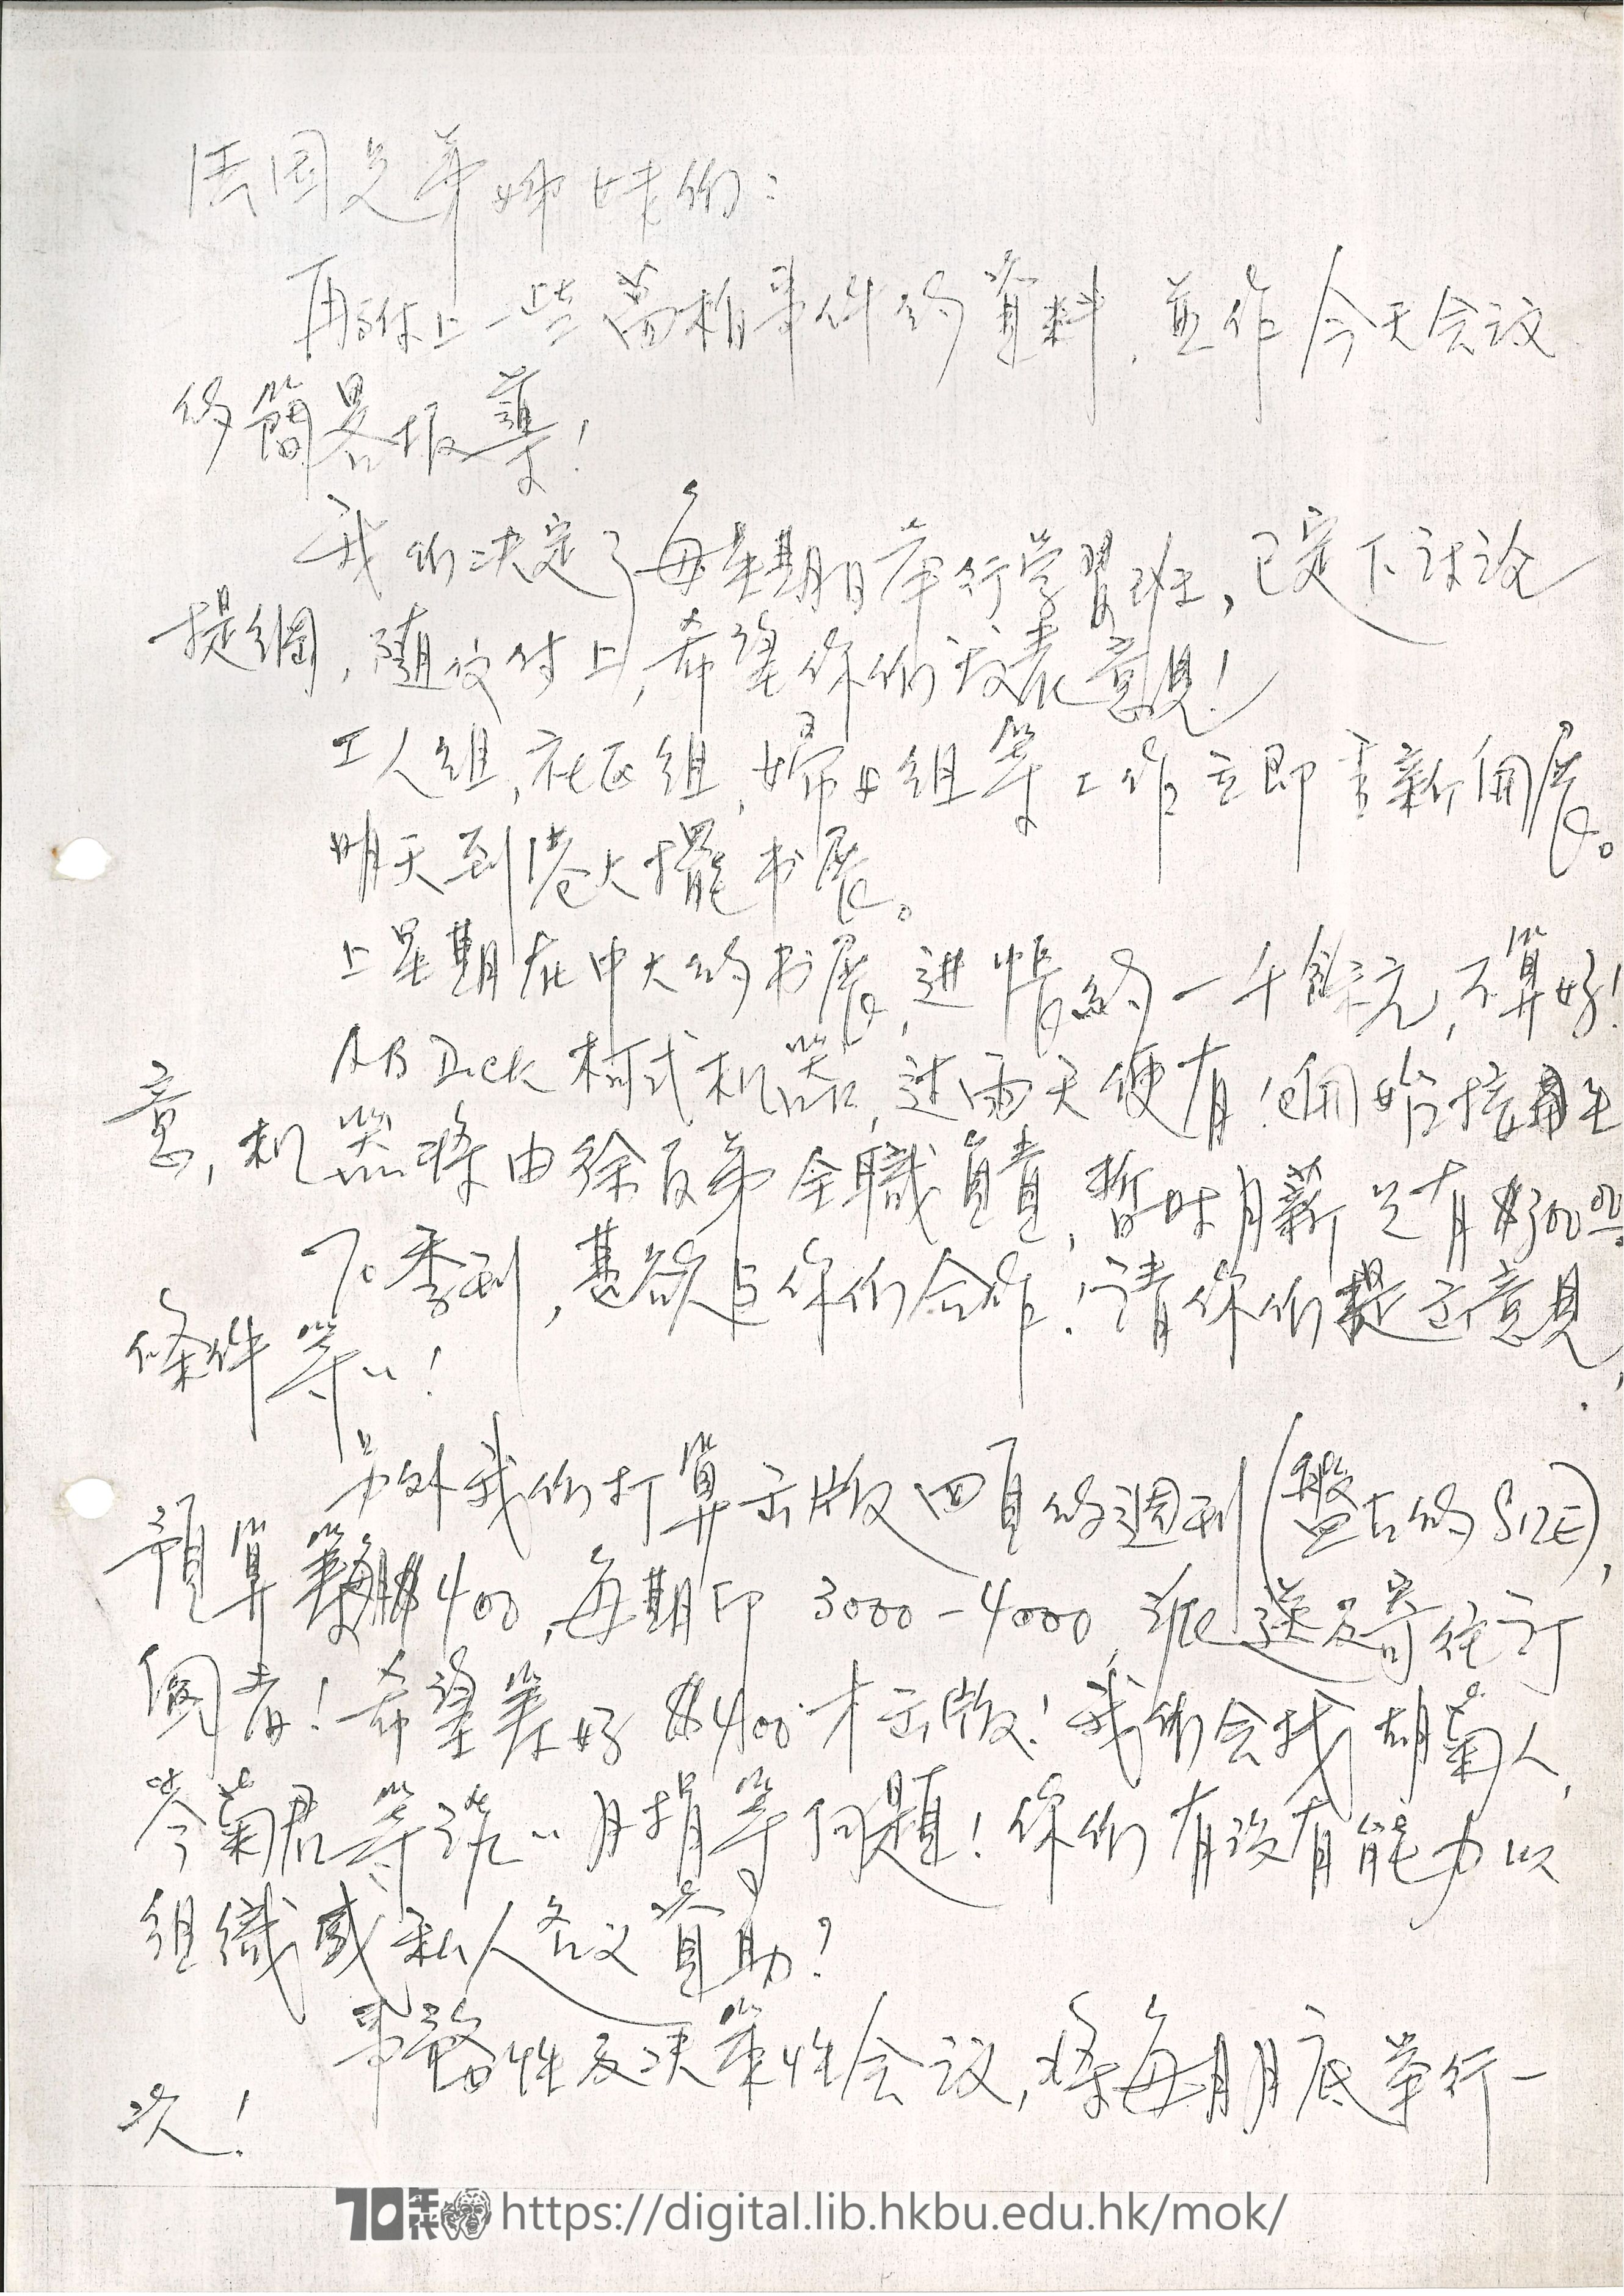   Letter from Mok Chiu Yu to France Branch MOK, Chiu Yu 